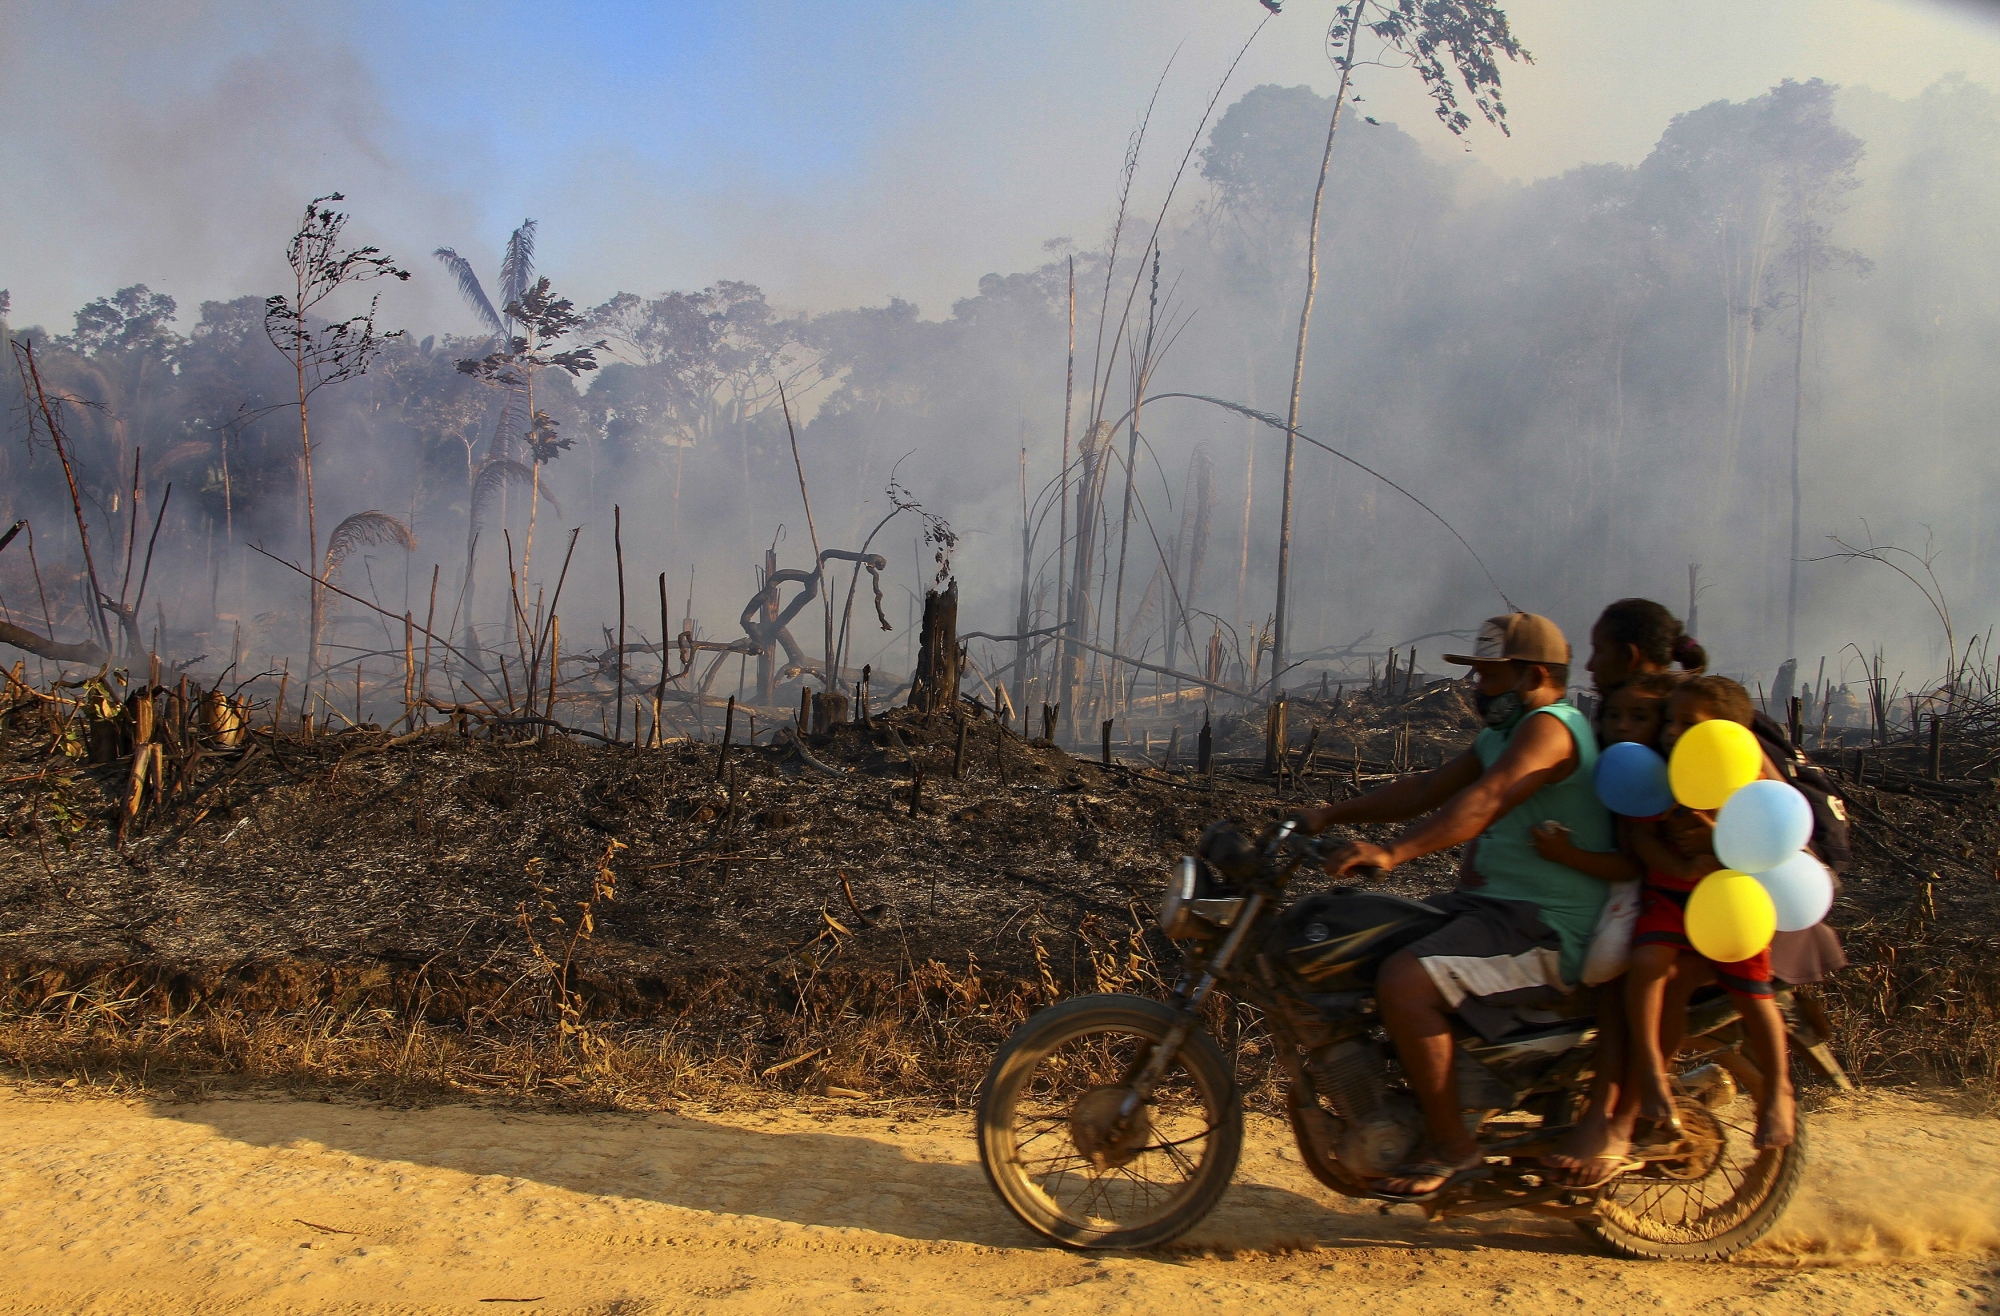 Les dix premiers jours du mois d’août, l’Institut national de recherches spatiales a recensé 10 136 incendies en Amazonie, contre 8669 à la même période, l’an passé.